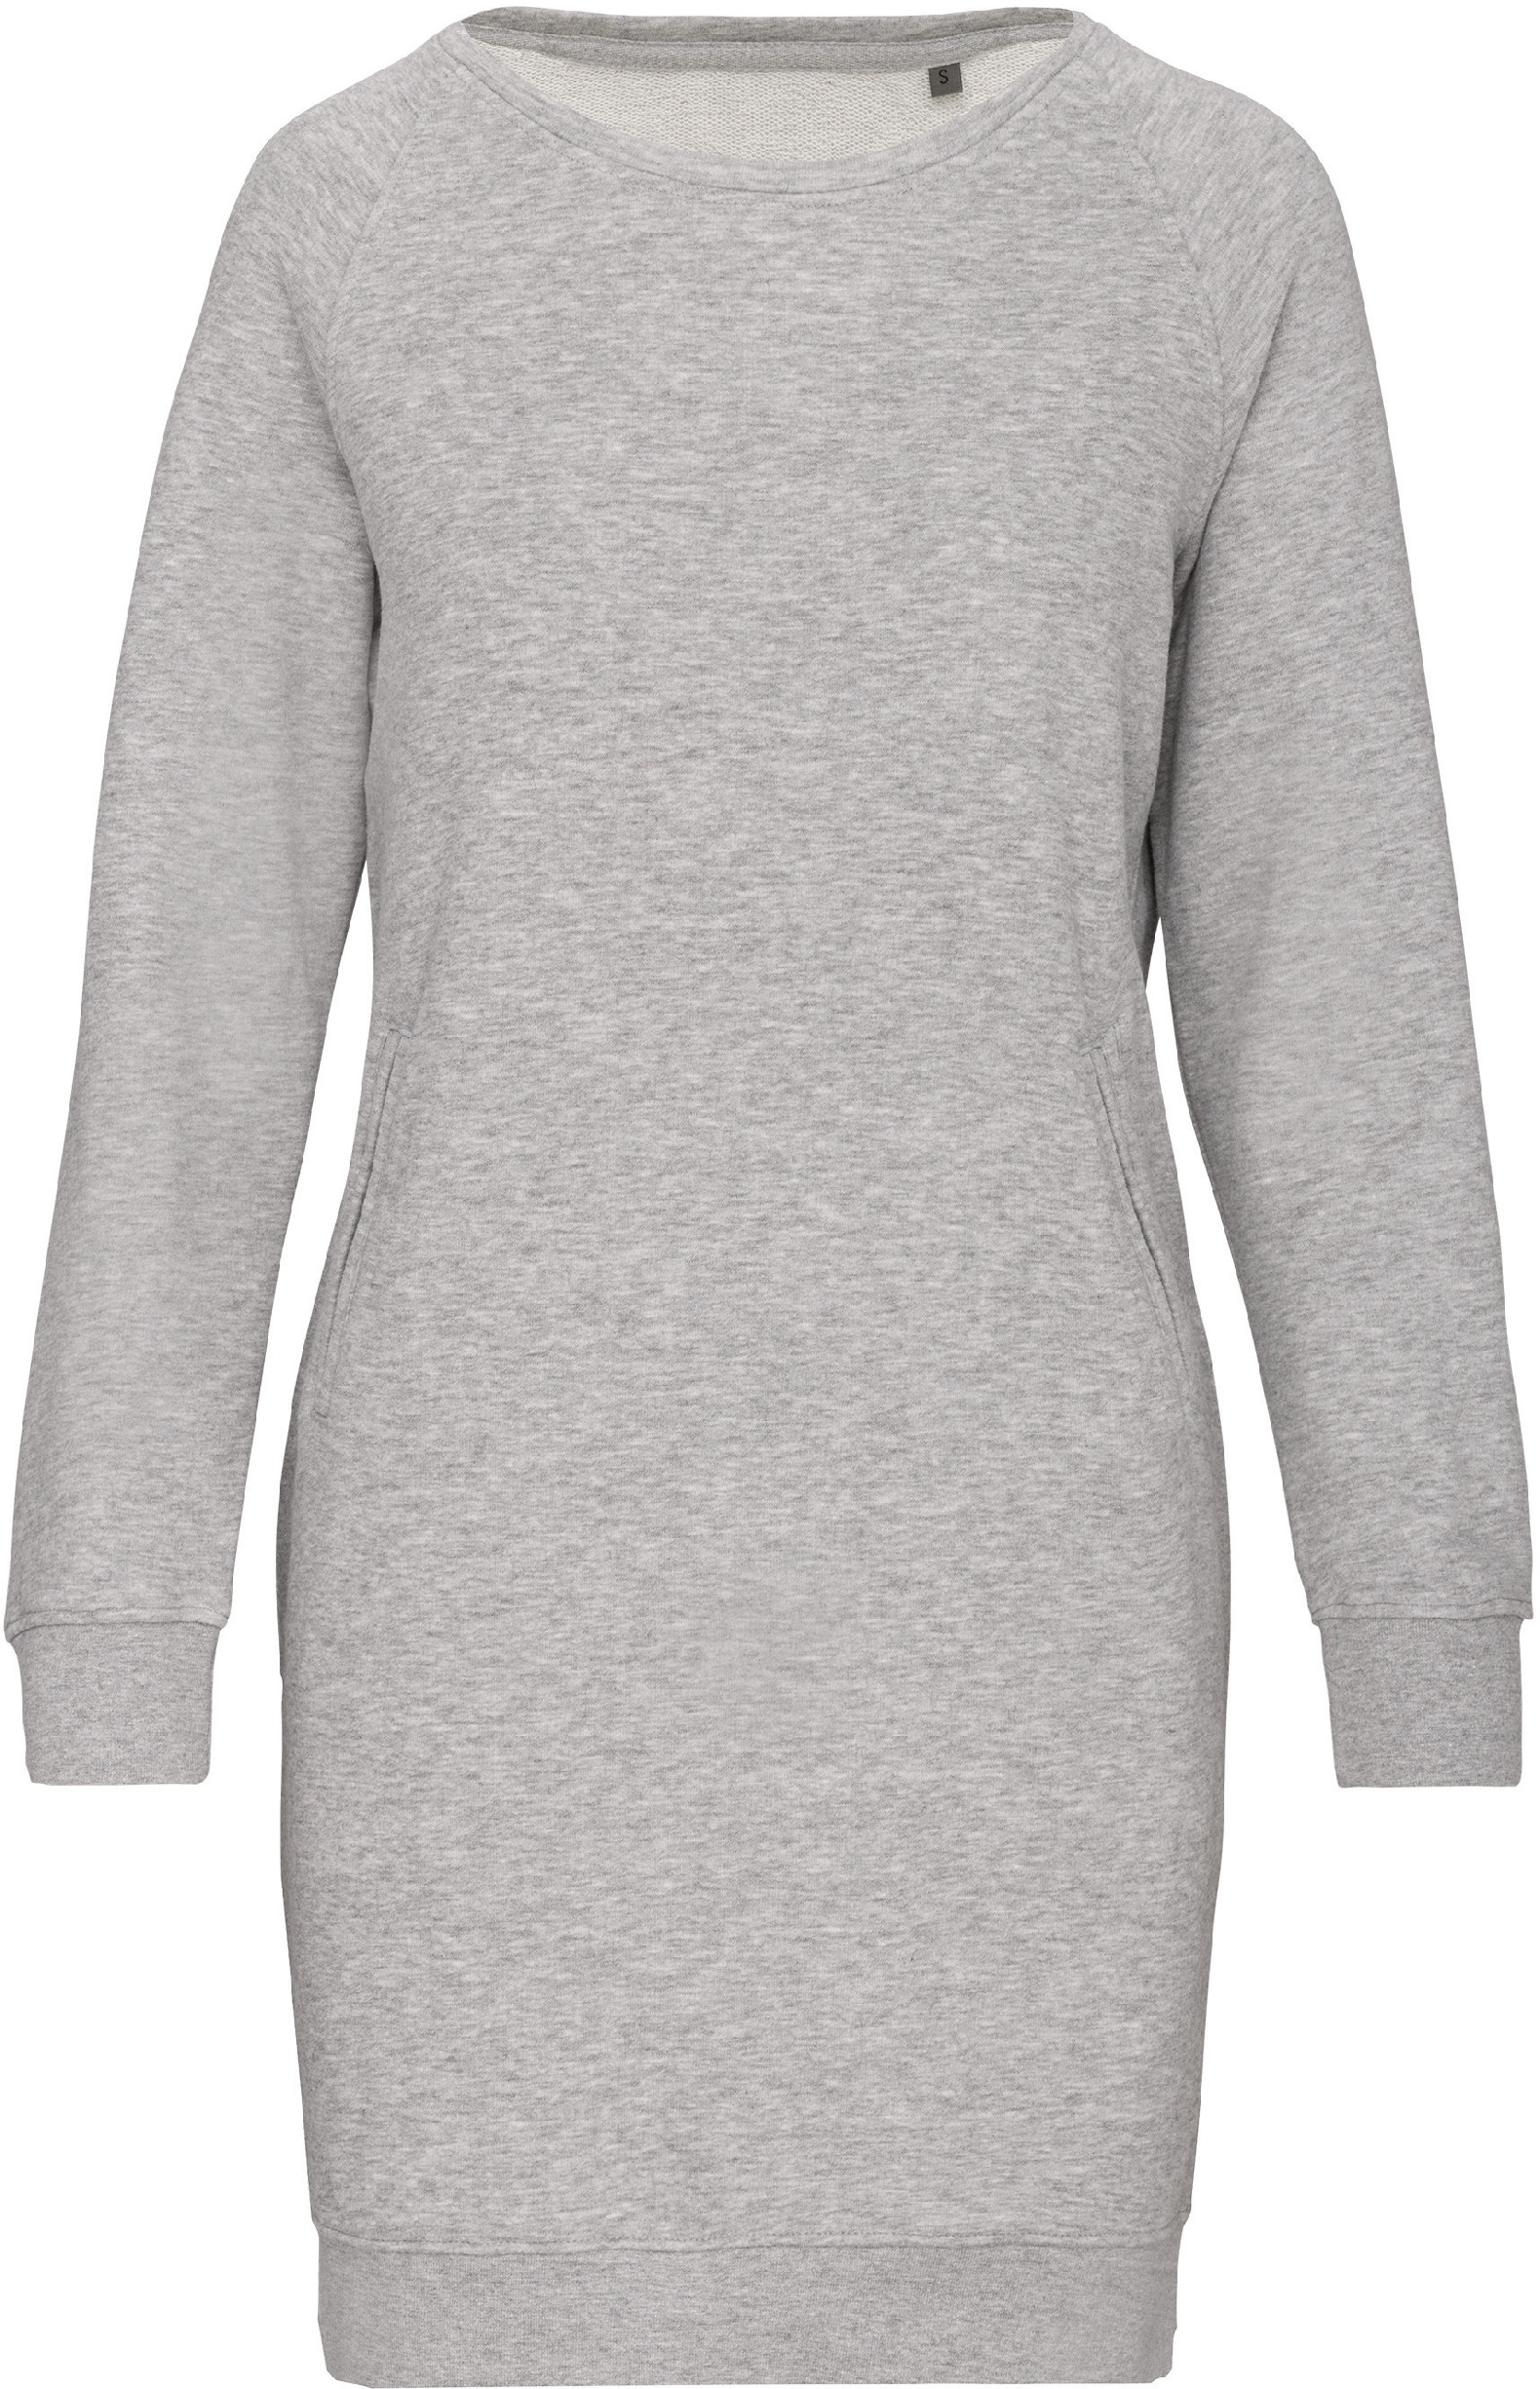 Organické teplákové šaty Barva: Light Grey Heather, Velikost: XL